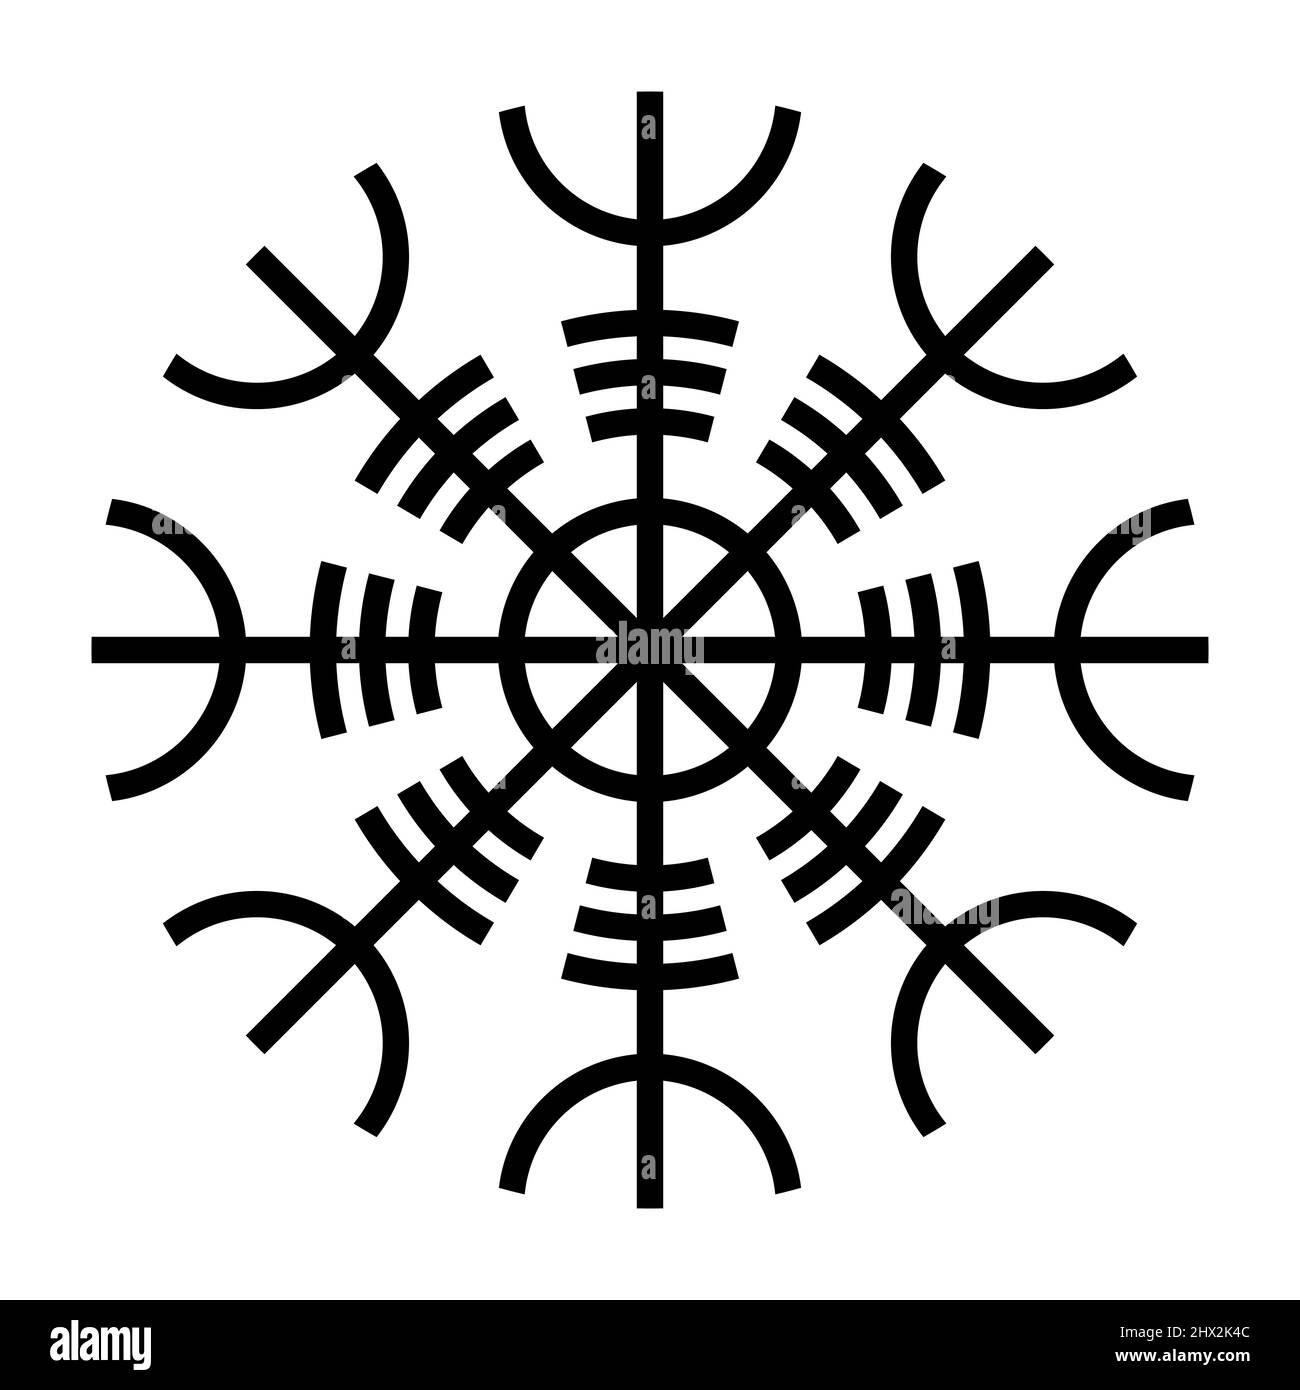 Helm der Ehrfurcht, Aegishjalmur, ist der Name eines isländischen okkulten Symbols und magischen Stabes, in der nordischen Mythologie. Wird als Teil eines christlichen Zauberrituals verwendet. Stockfoto